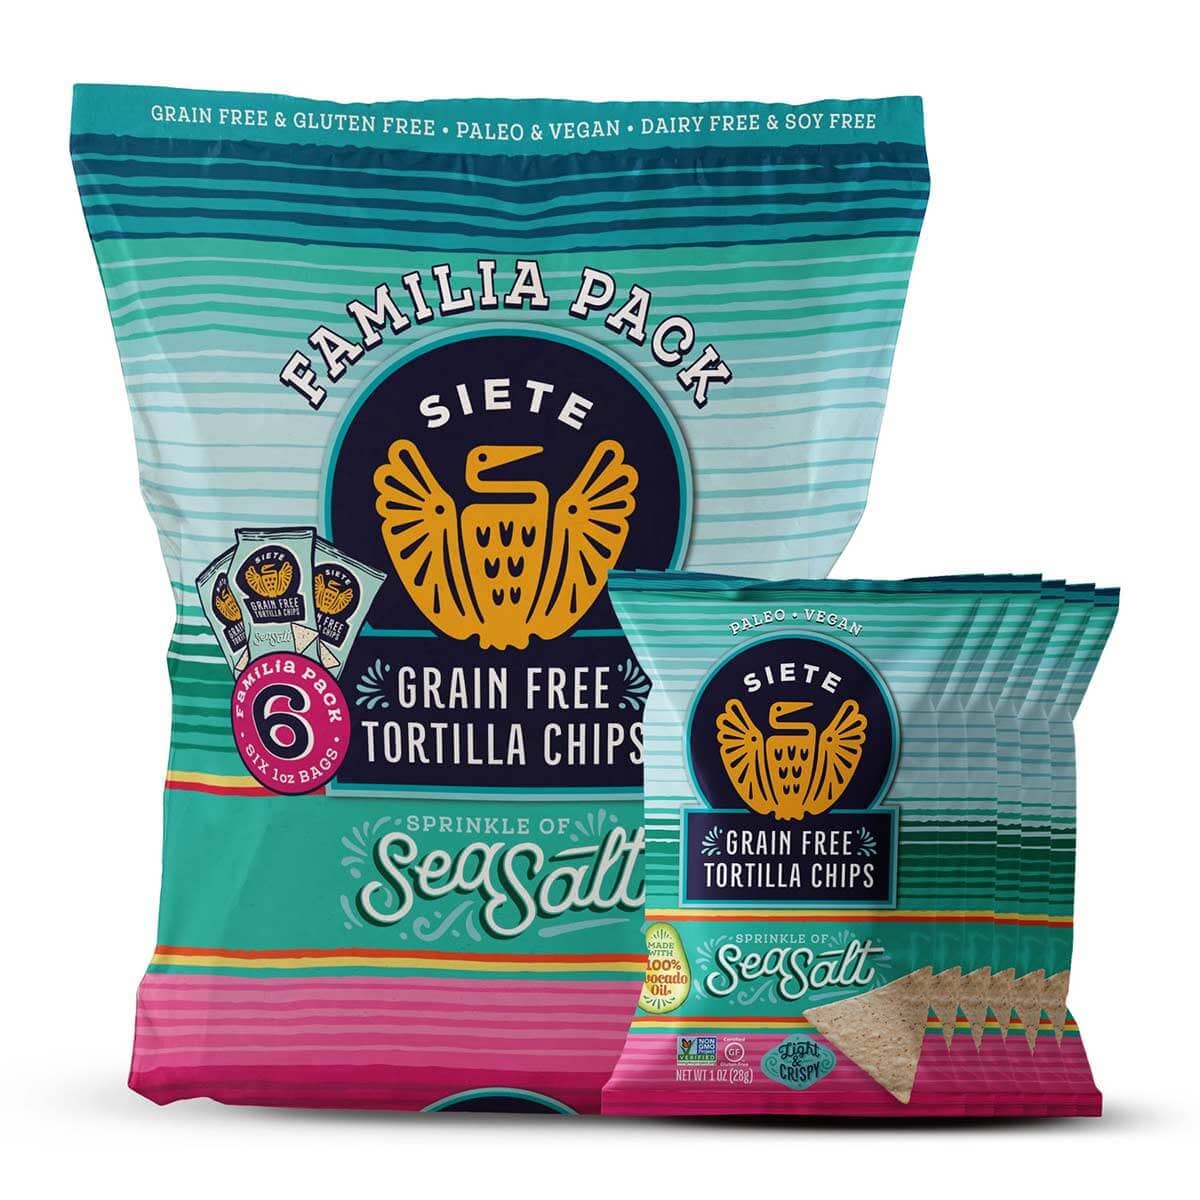 Xochitl tortilla chips are the worst | by Silvia Killingsworth | De  Gustibus | Medium